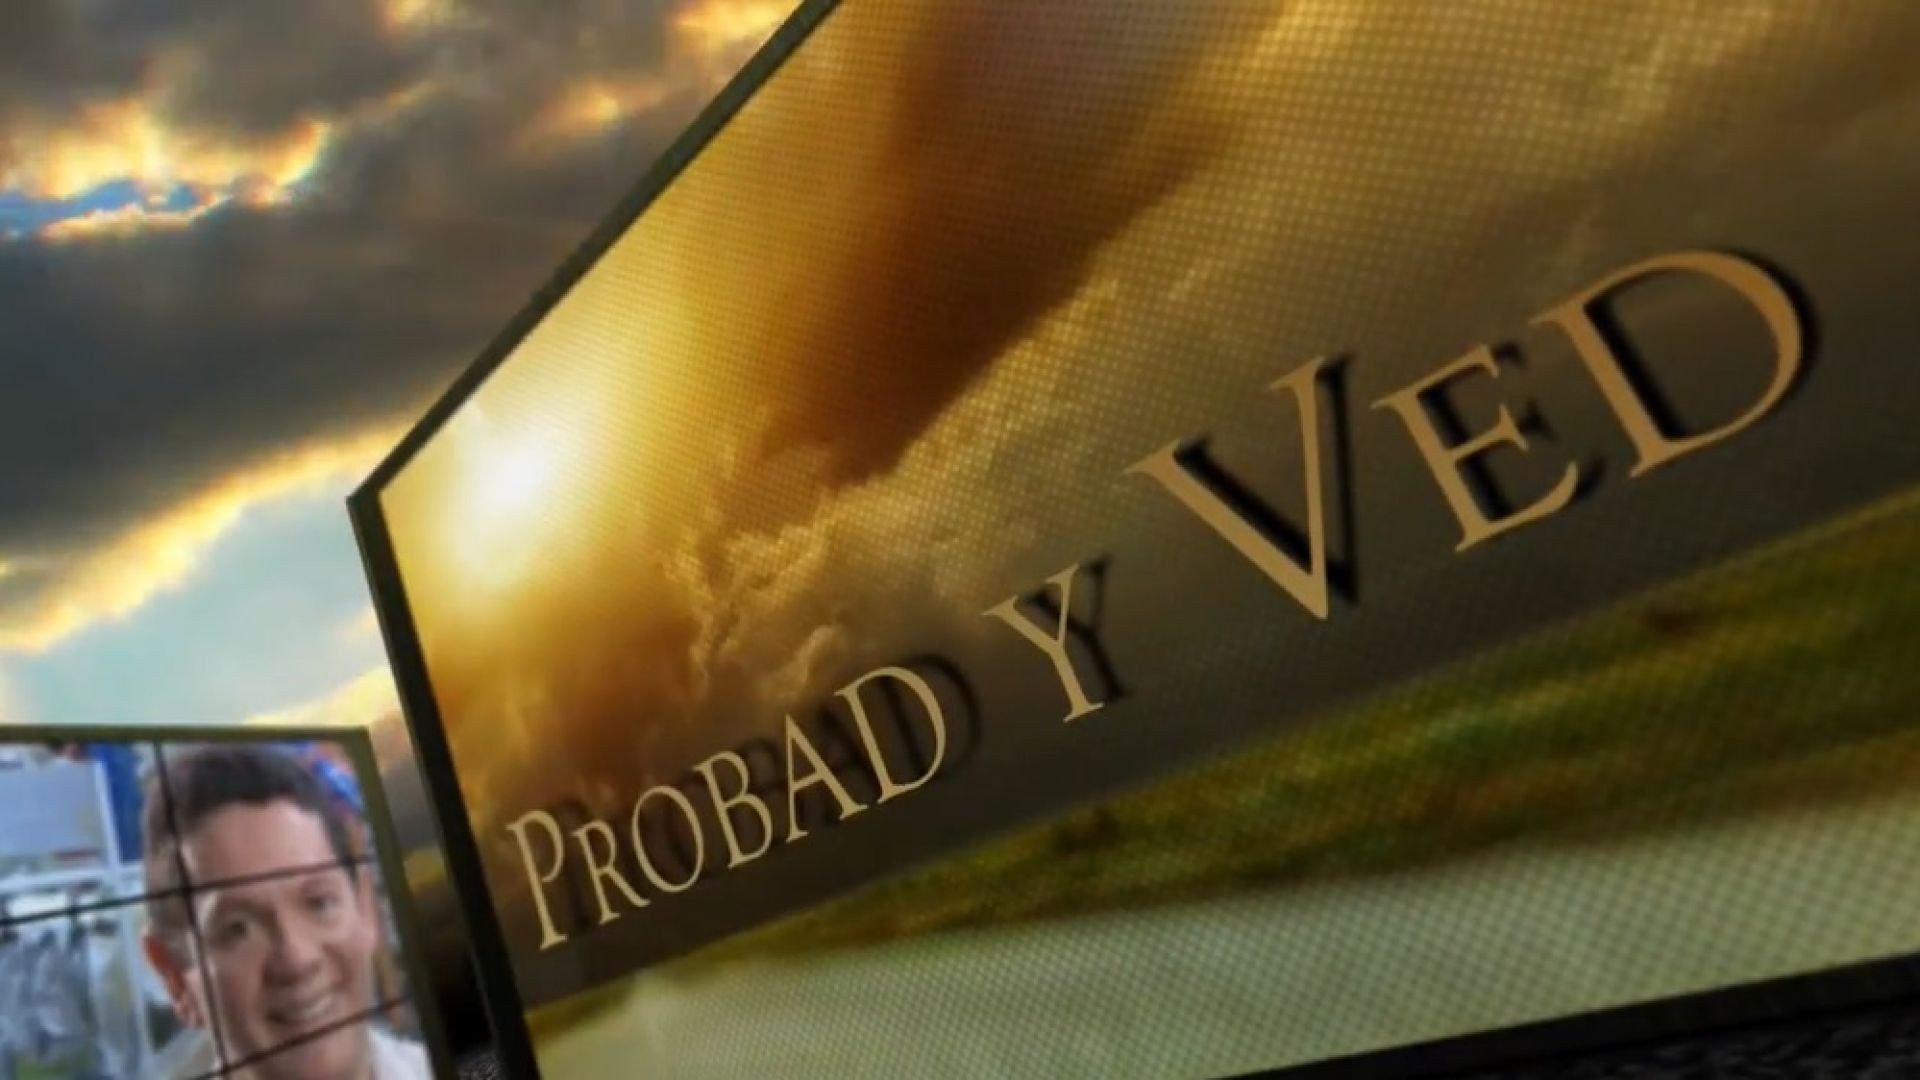 ⁣Probad y Ved 2013 - Comunicando esperanza - 16/Mar